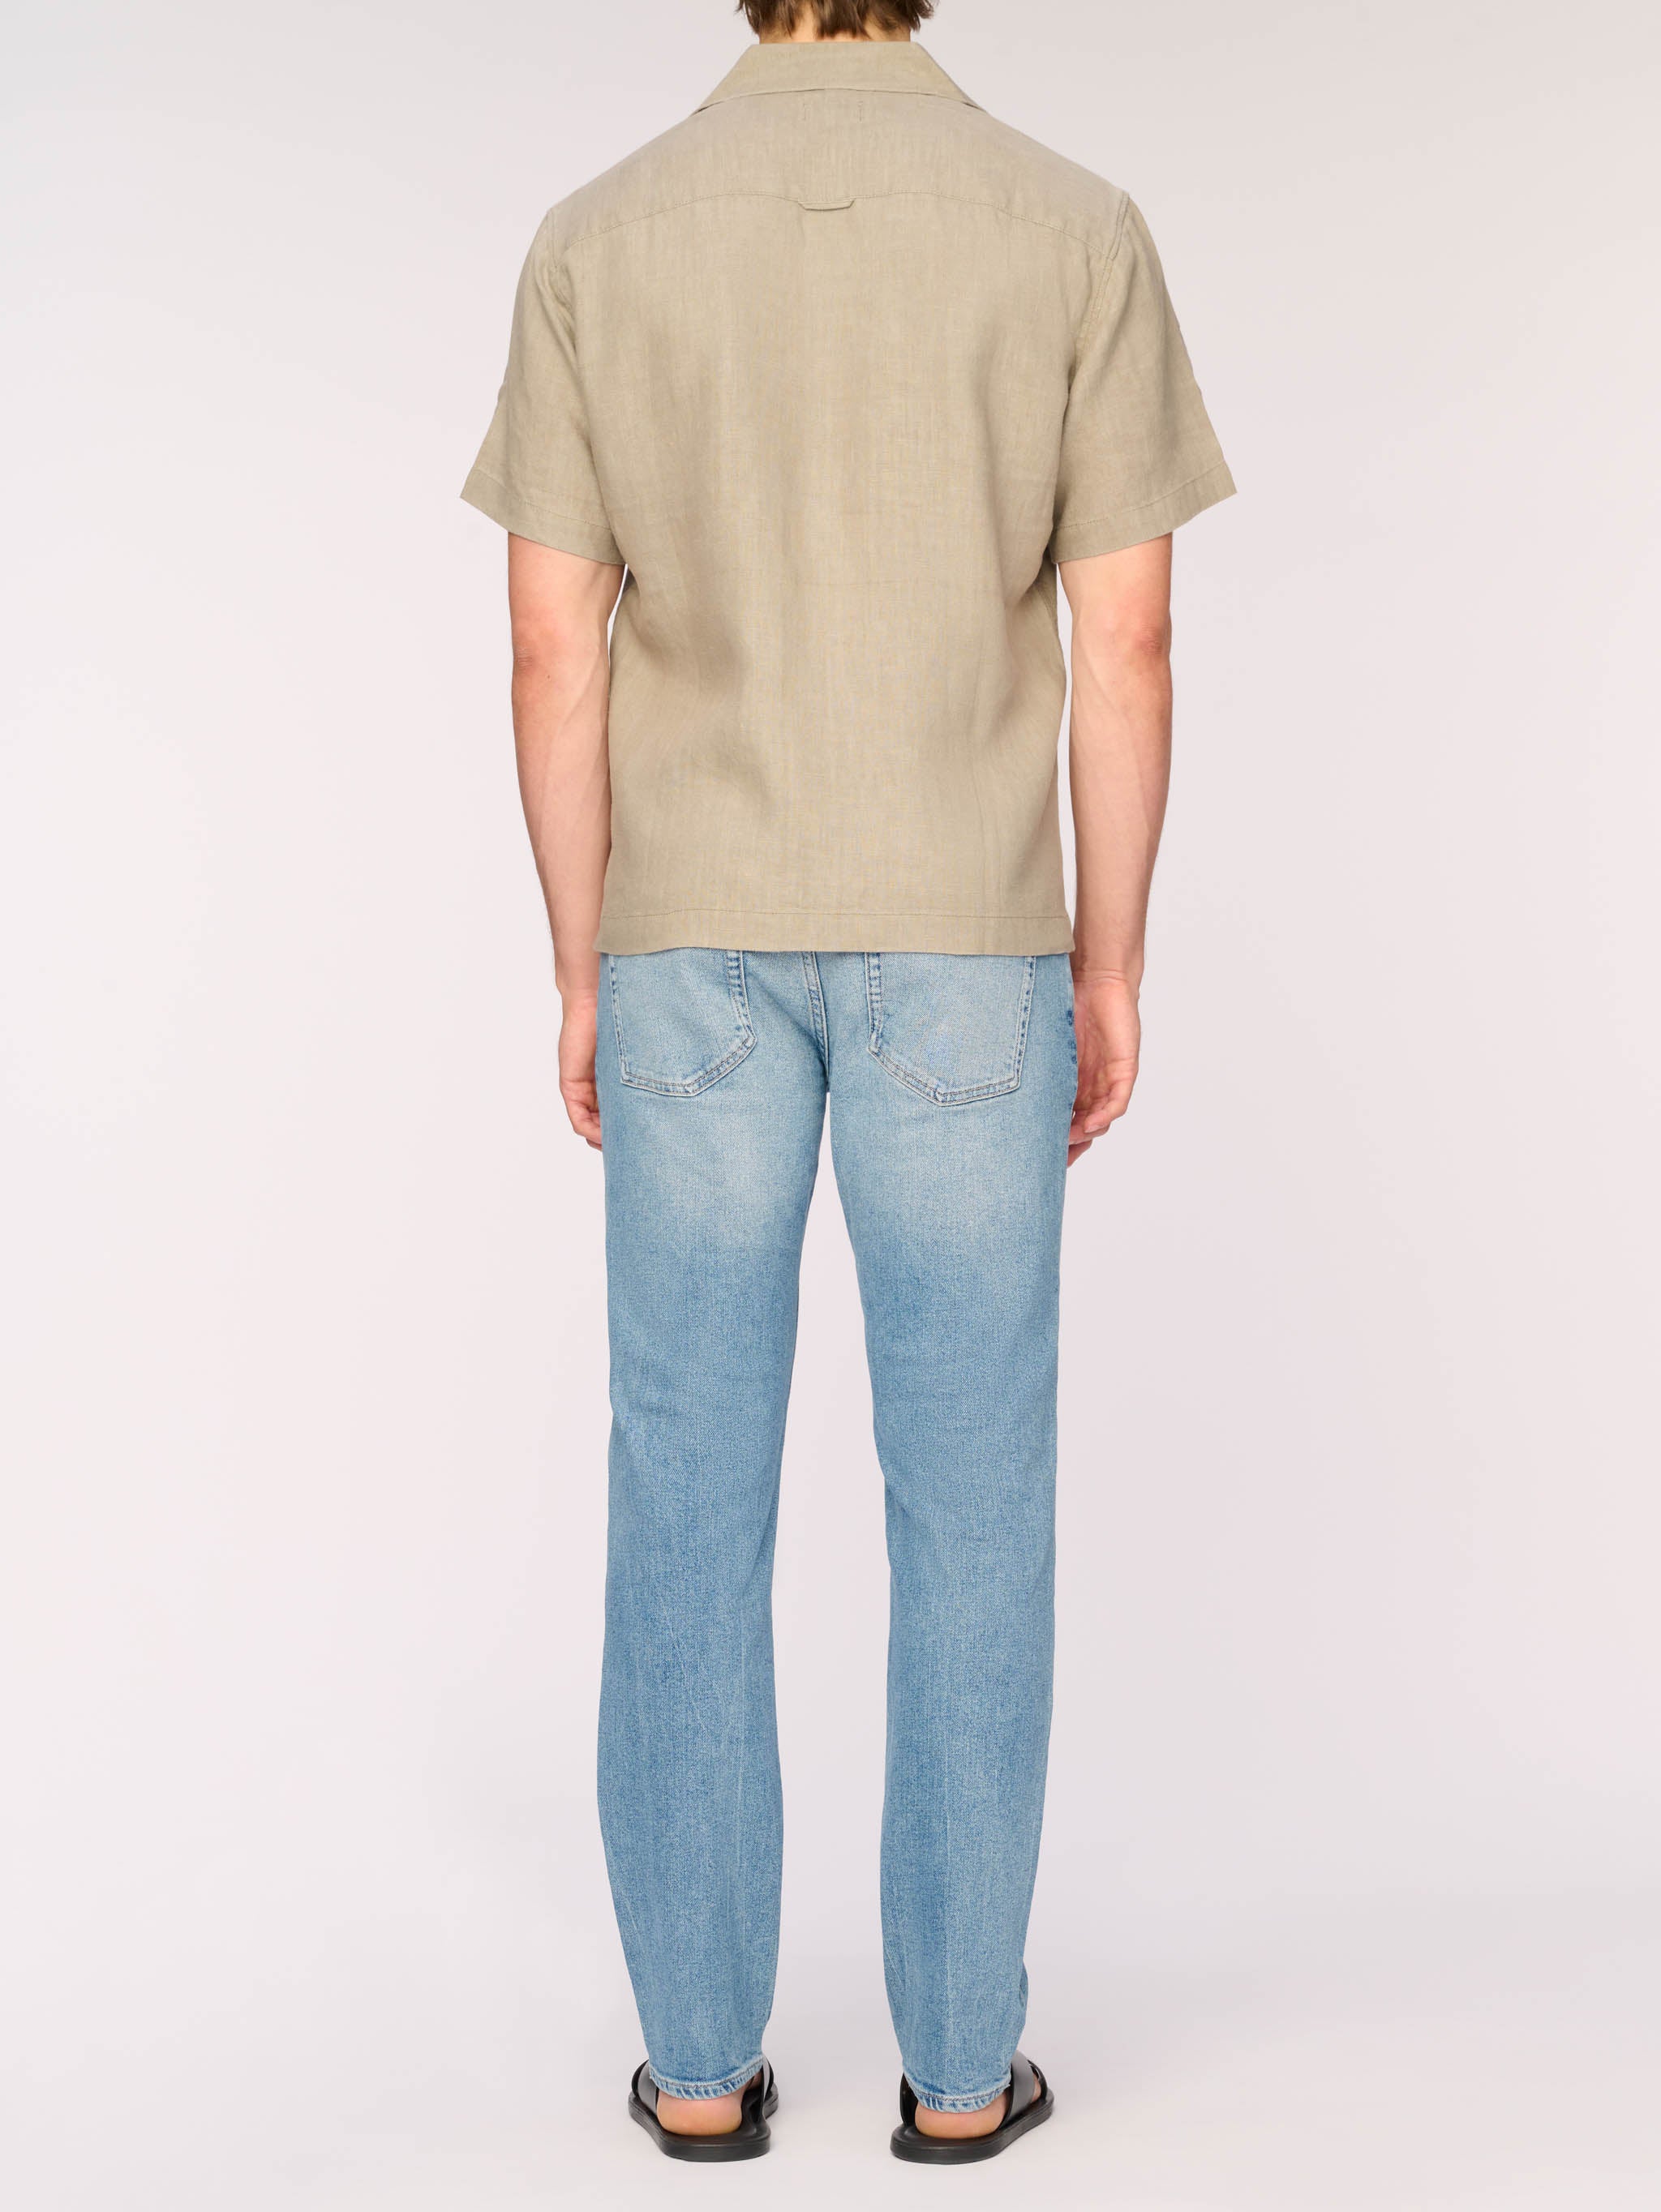 Hugh Shirt | Dried Sage Linen